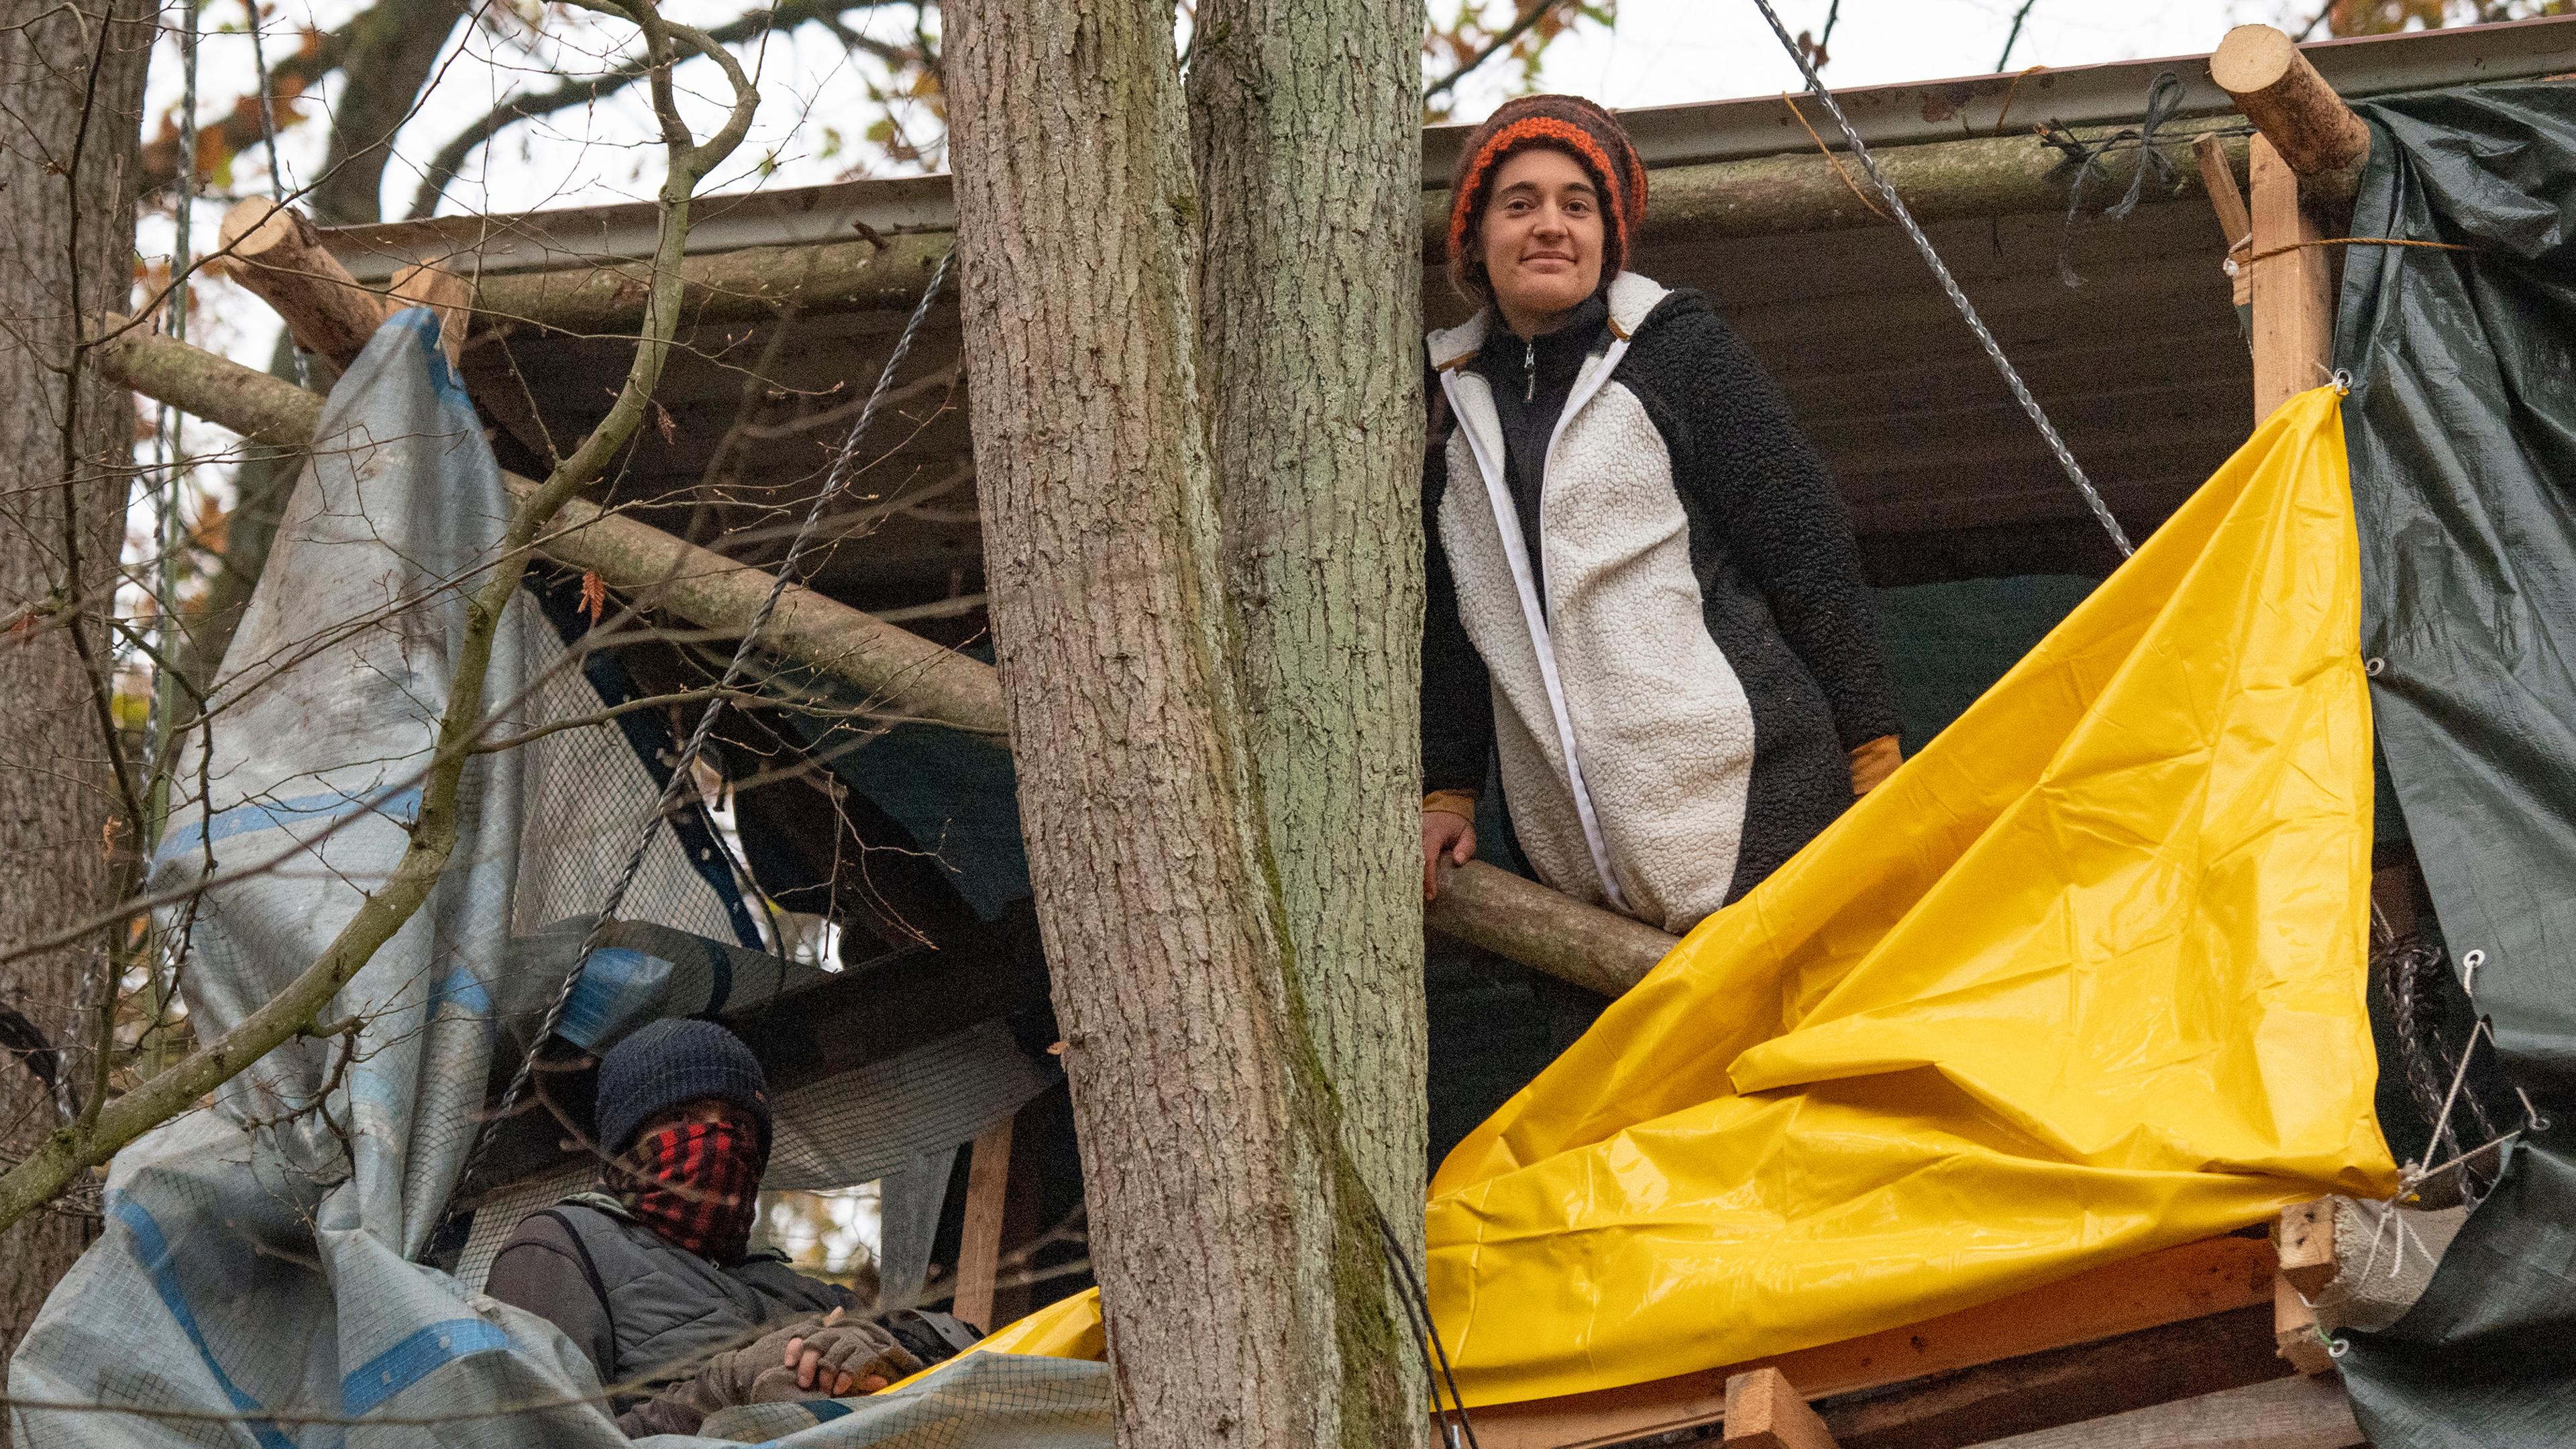 12.11.2020, Niderklein: Umweltaktivistin Carola Rackete auf einem Baumhaus im Dannenröder Forst